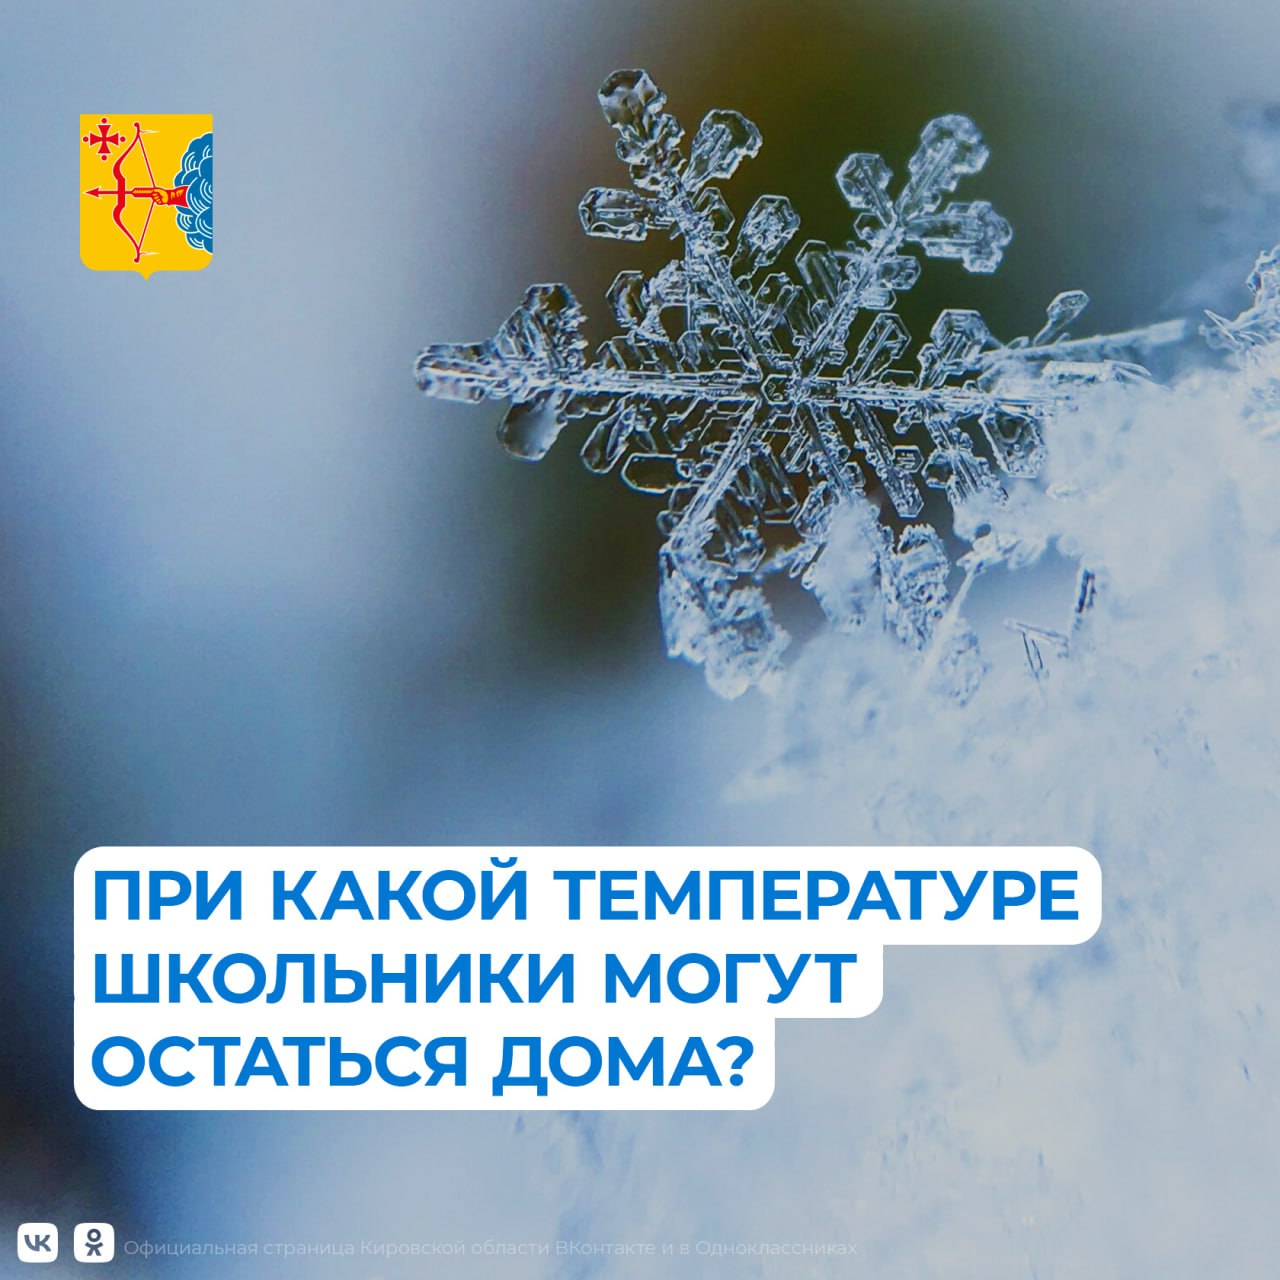 Режим работы МБОУ СОШ № 11 г. Кирова в условиях низкой температуры наружного воздуха в зимний период.